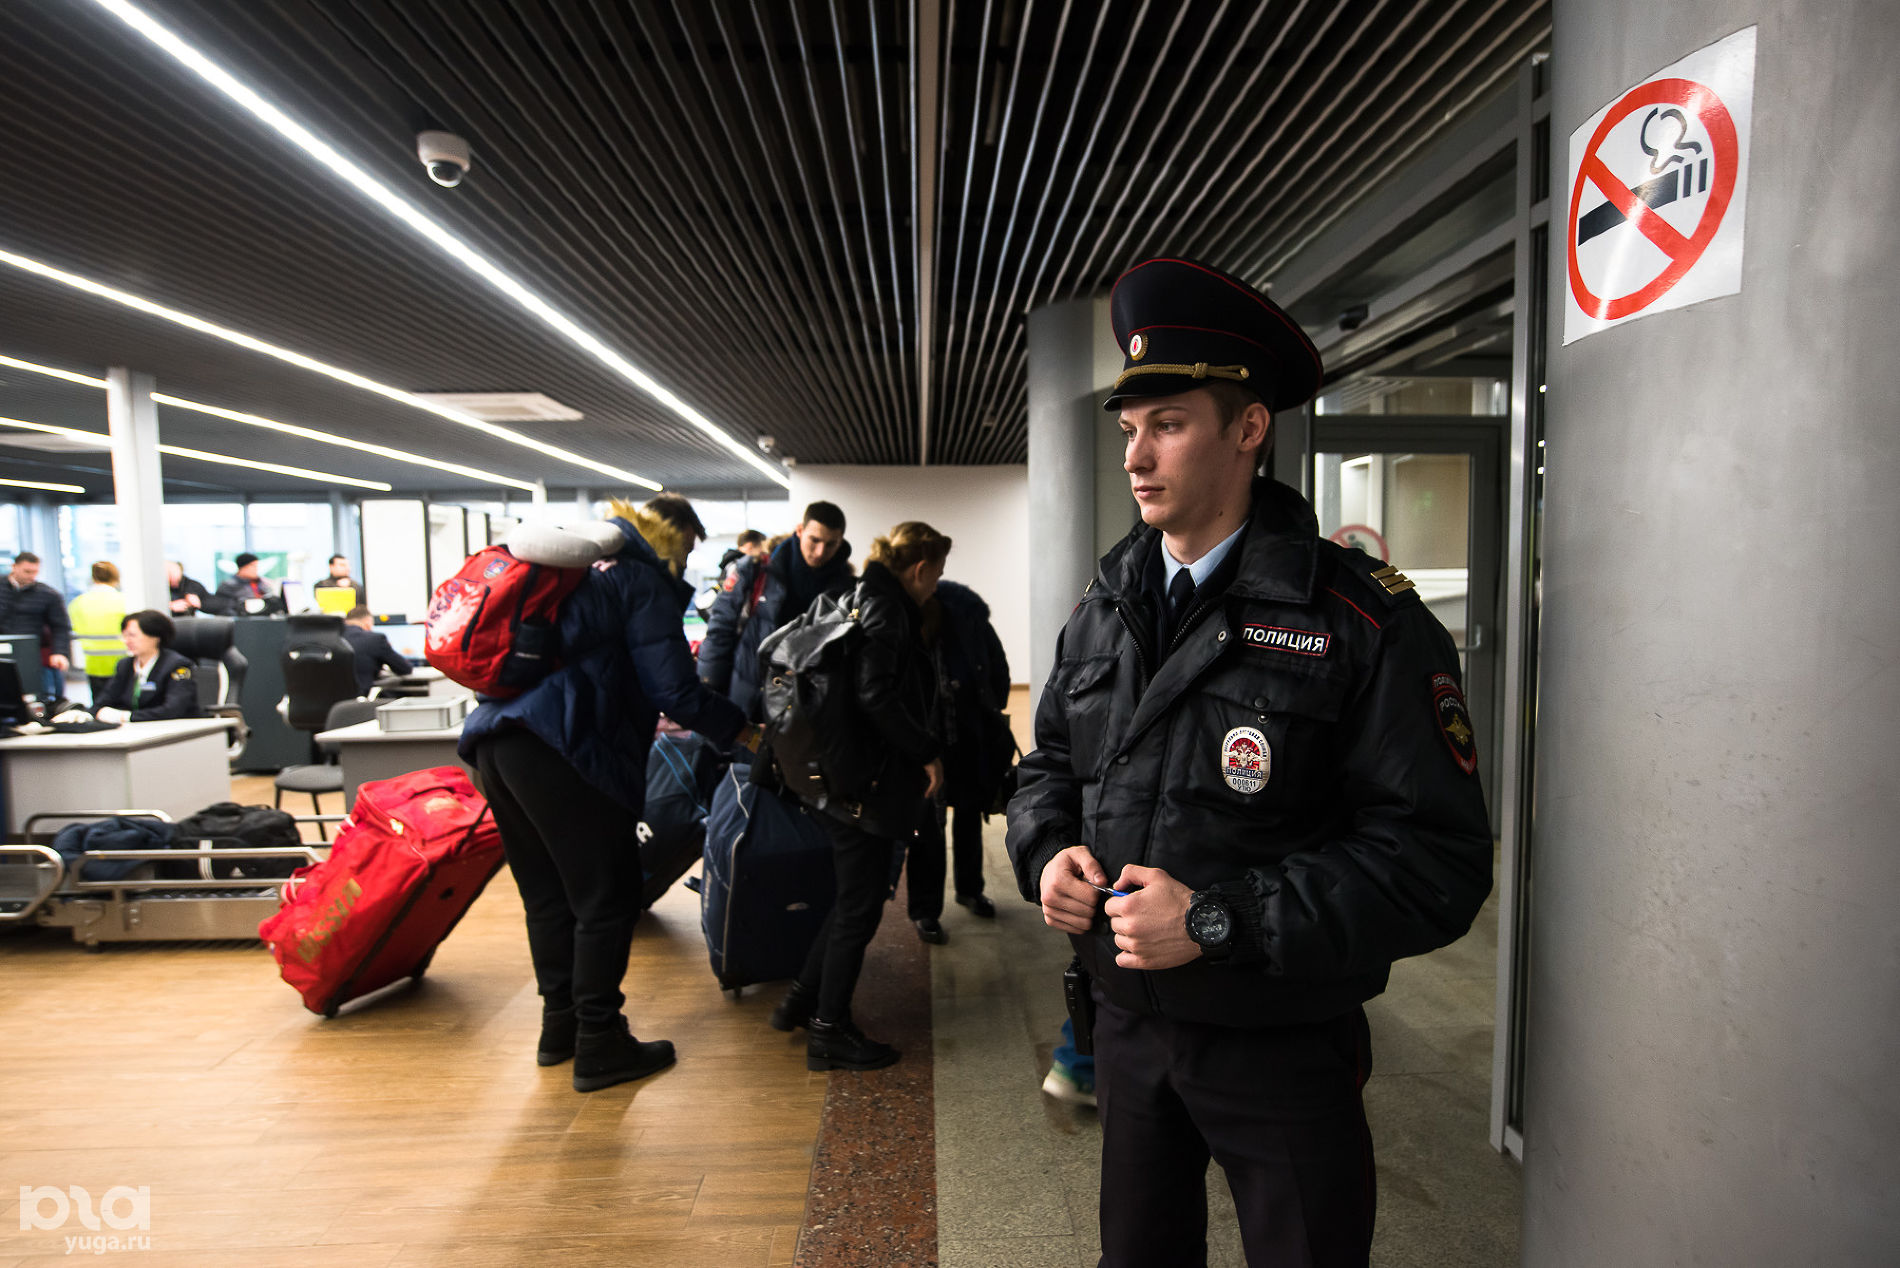 Телефоны транспортной полиции. Полицейский в аэропорту. Транспортная полиция. Полиция на транспорте. Российская полиция в аэропорту.